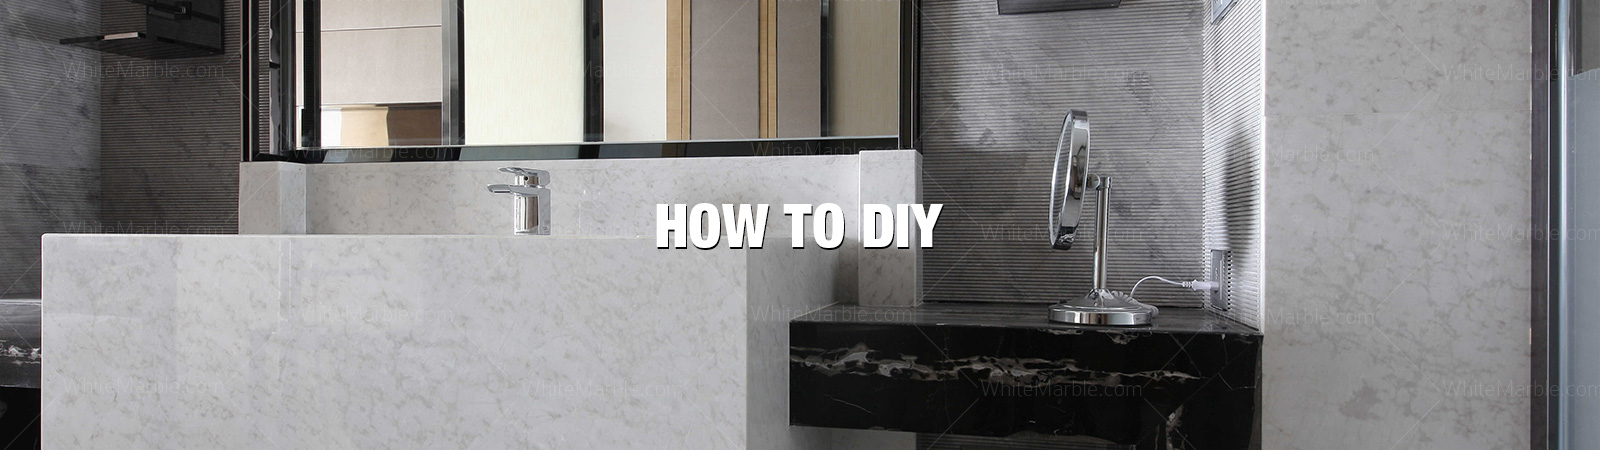 How to DIY | White Marble | Statuario Marble | Thassos White Marble